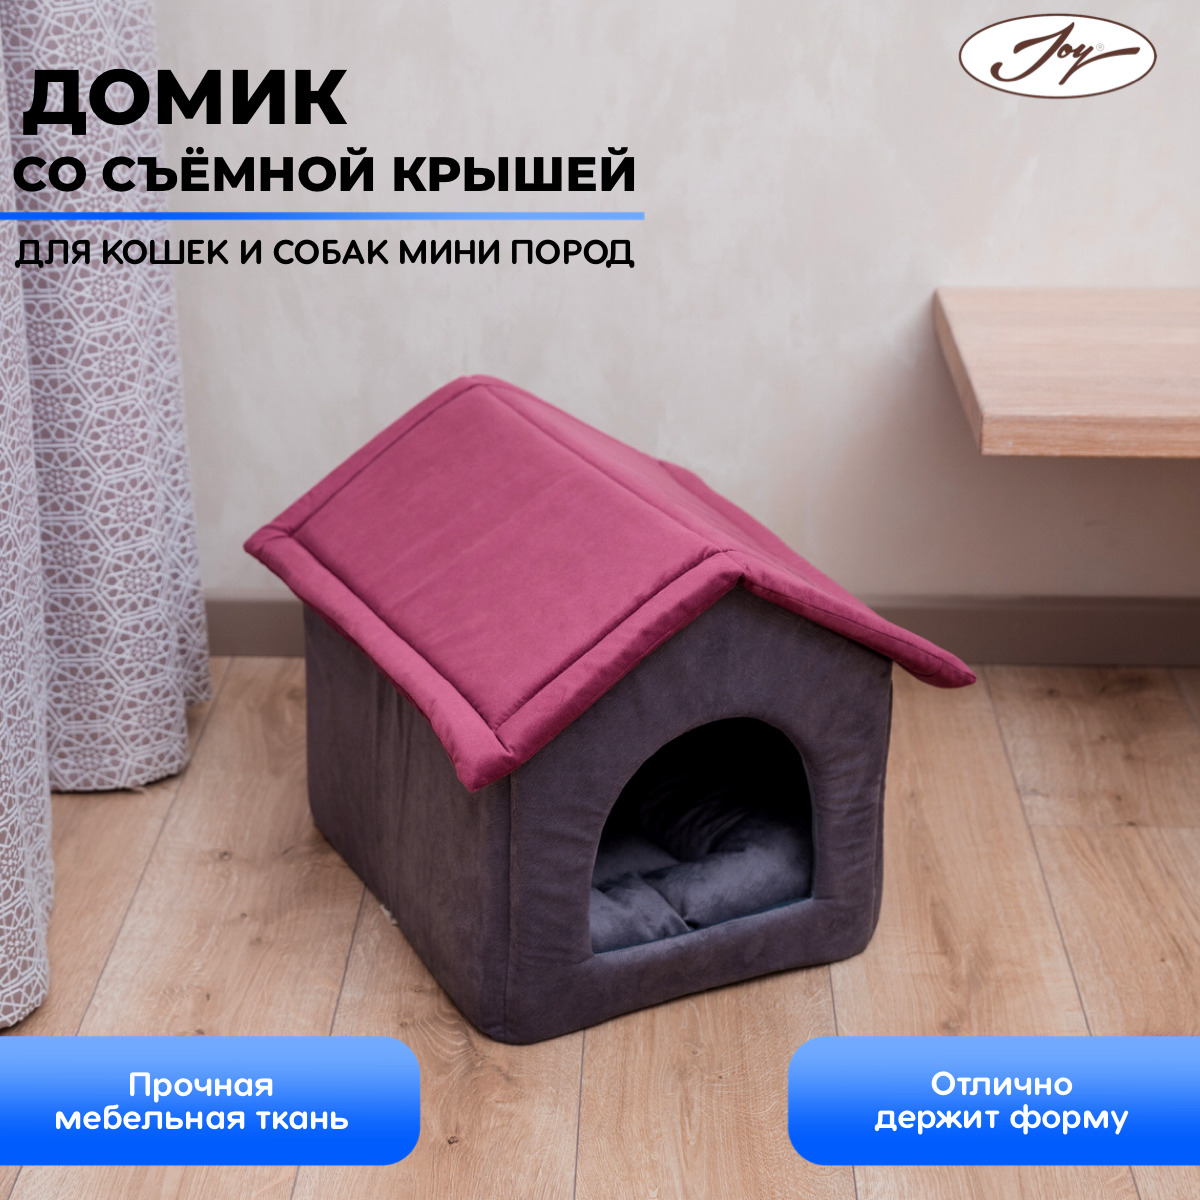 Домик для собаки с доставкой по Москве и области